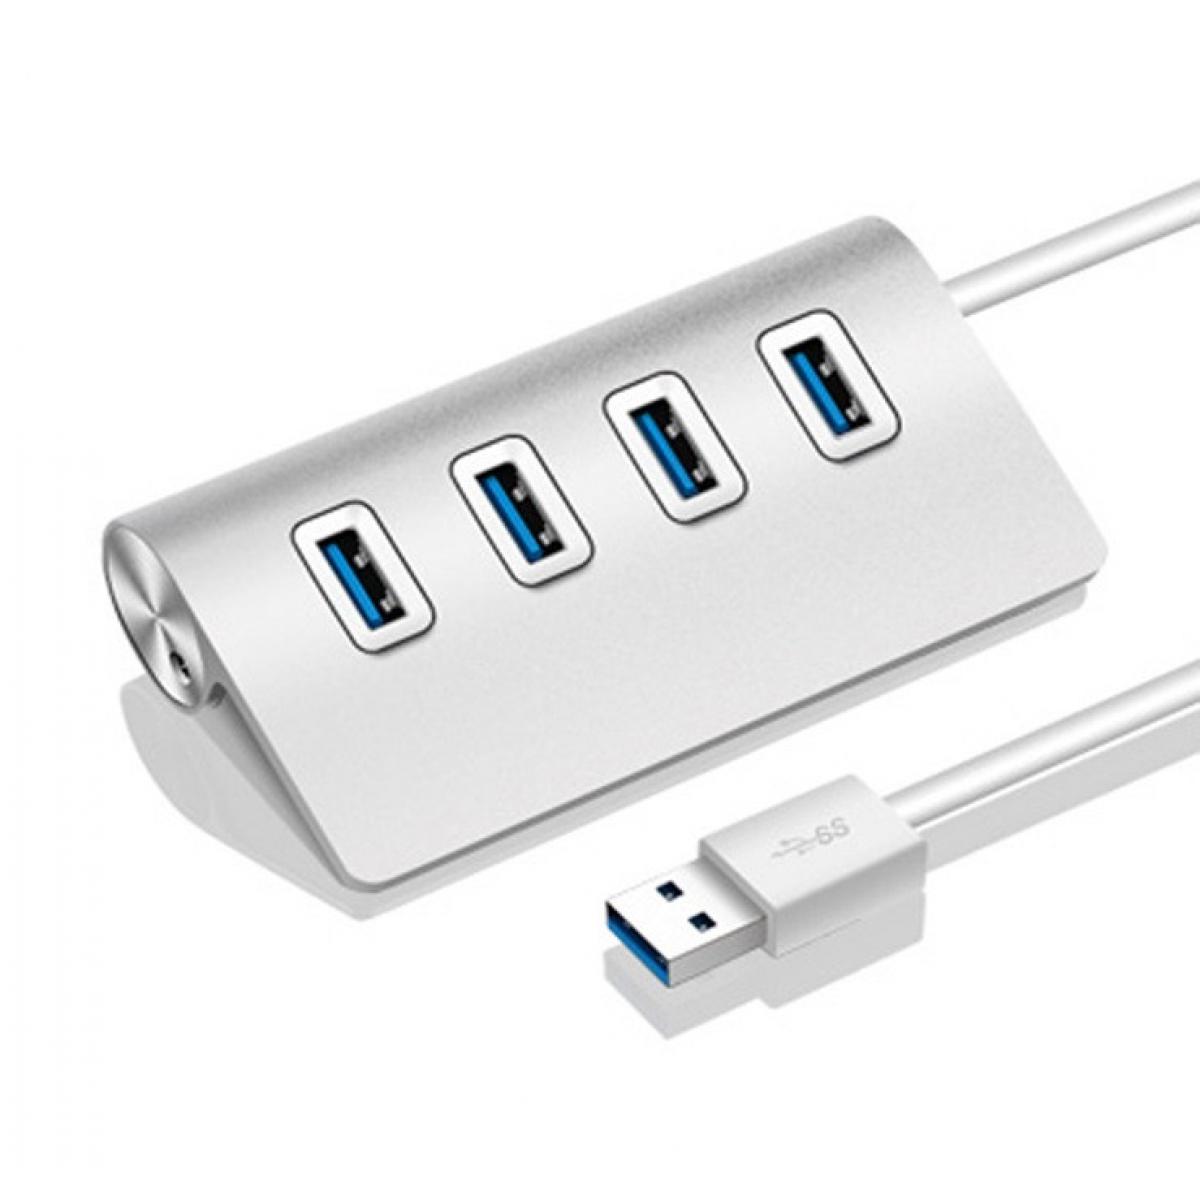 Shot - Hub Metal 4 ports USB 2.0 pour PC MAC Pro APPLE Multi-prises Adaptateur Rallonge (ARGENT) - Hub